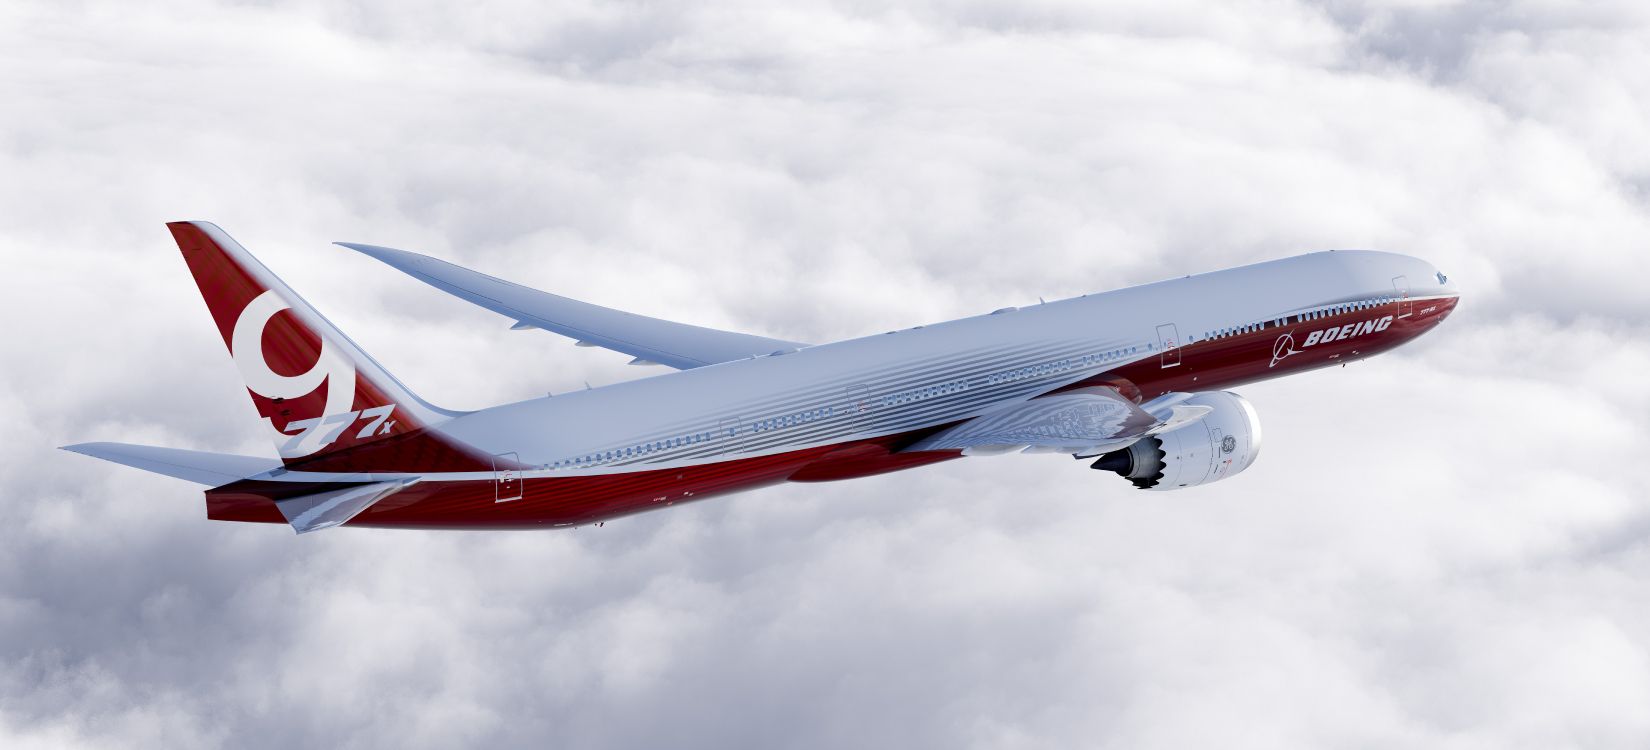 Rotes Und Weißes Flugzeug Unter Weißen Wolken Tagsüber. Wallpaper in 11000x5000 Resolution